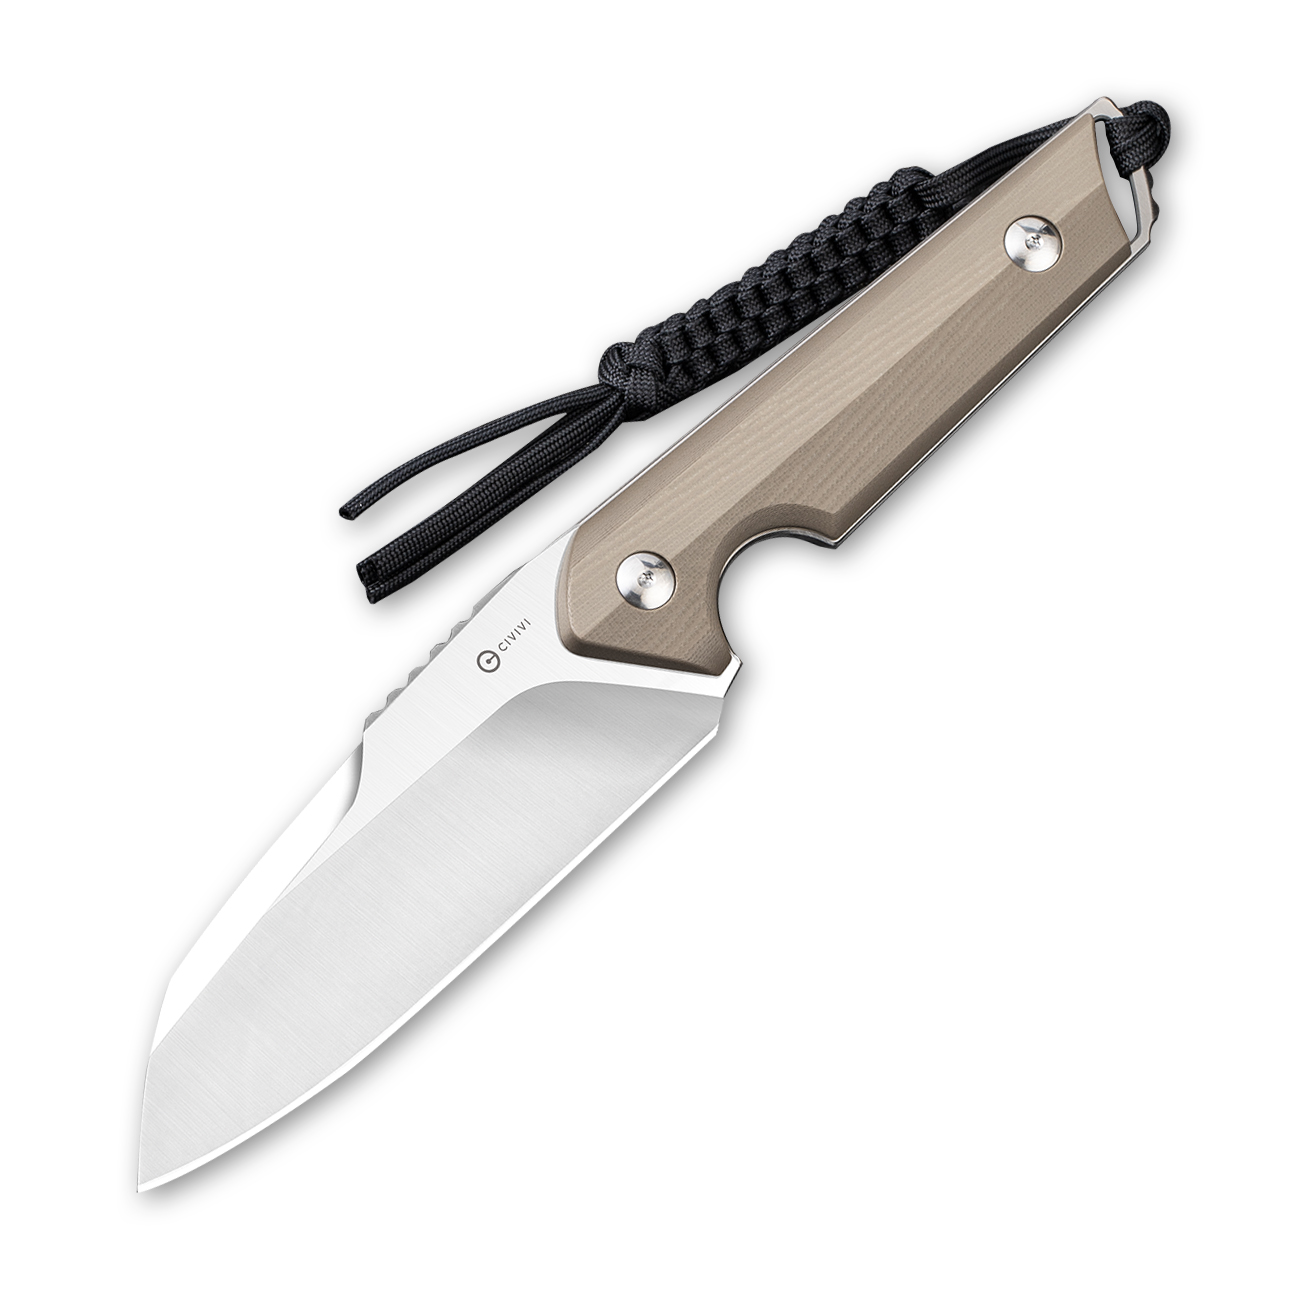 CIVIVI Kepler Fixed Blade C2109B Knife 9Cr18MoV Stainless Steel & Tan G10 Hunting Knives